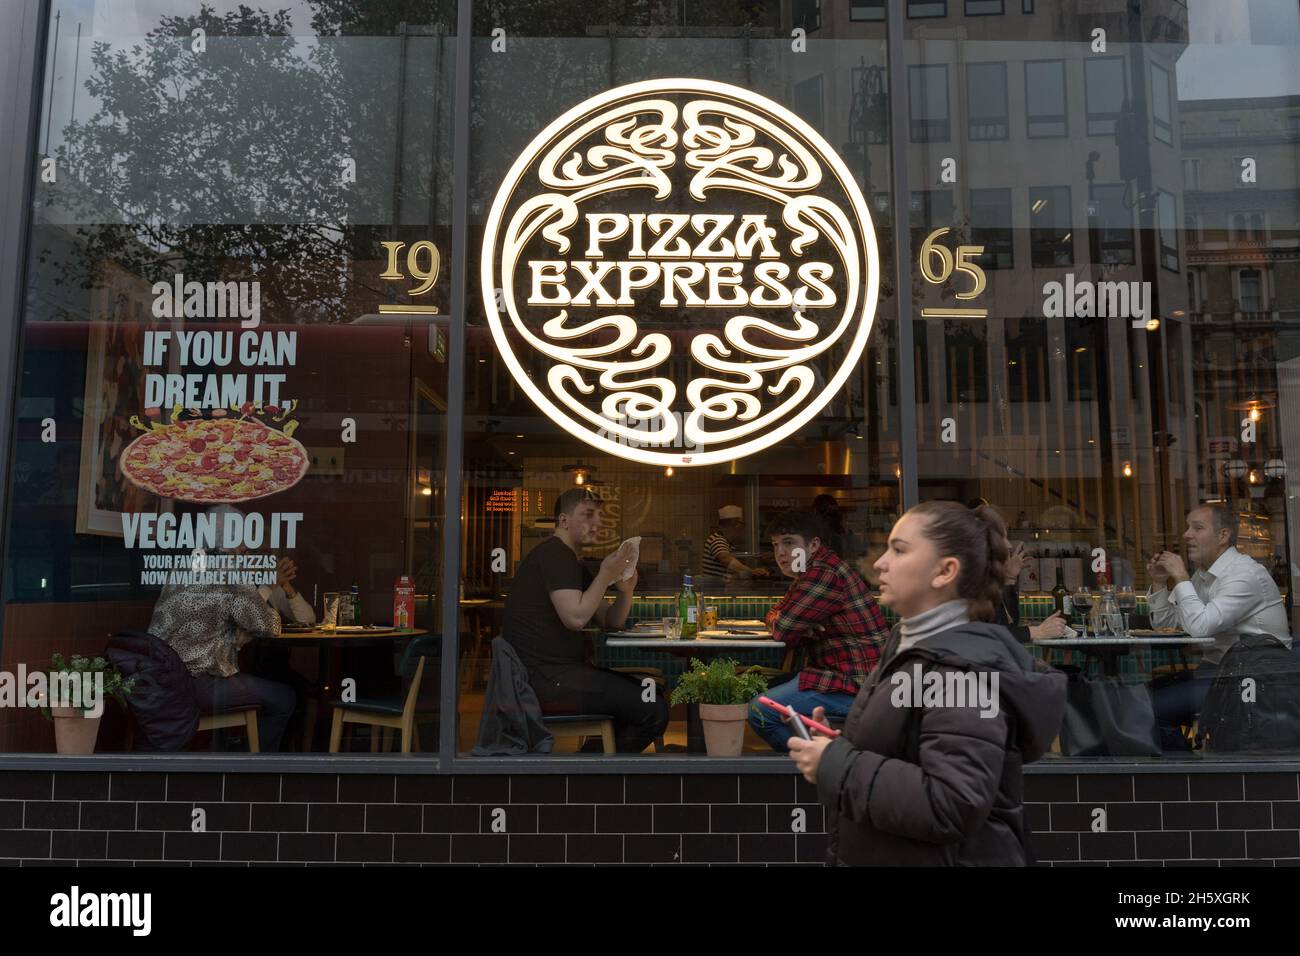 Restaurant pizza express près de Trafalgar Square Londres Angleterre Royaume-Uni Banque D'Images